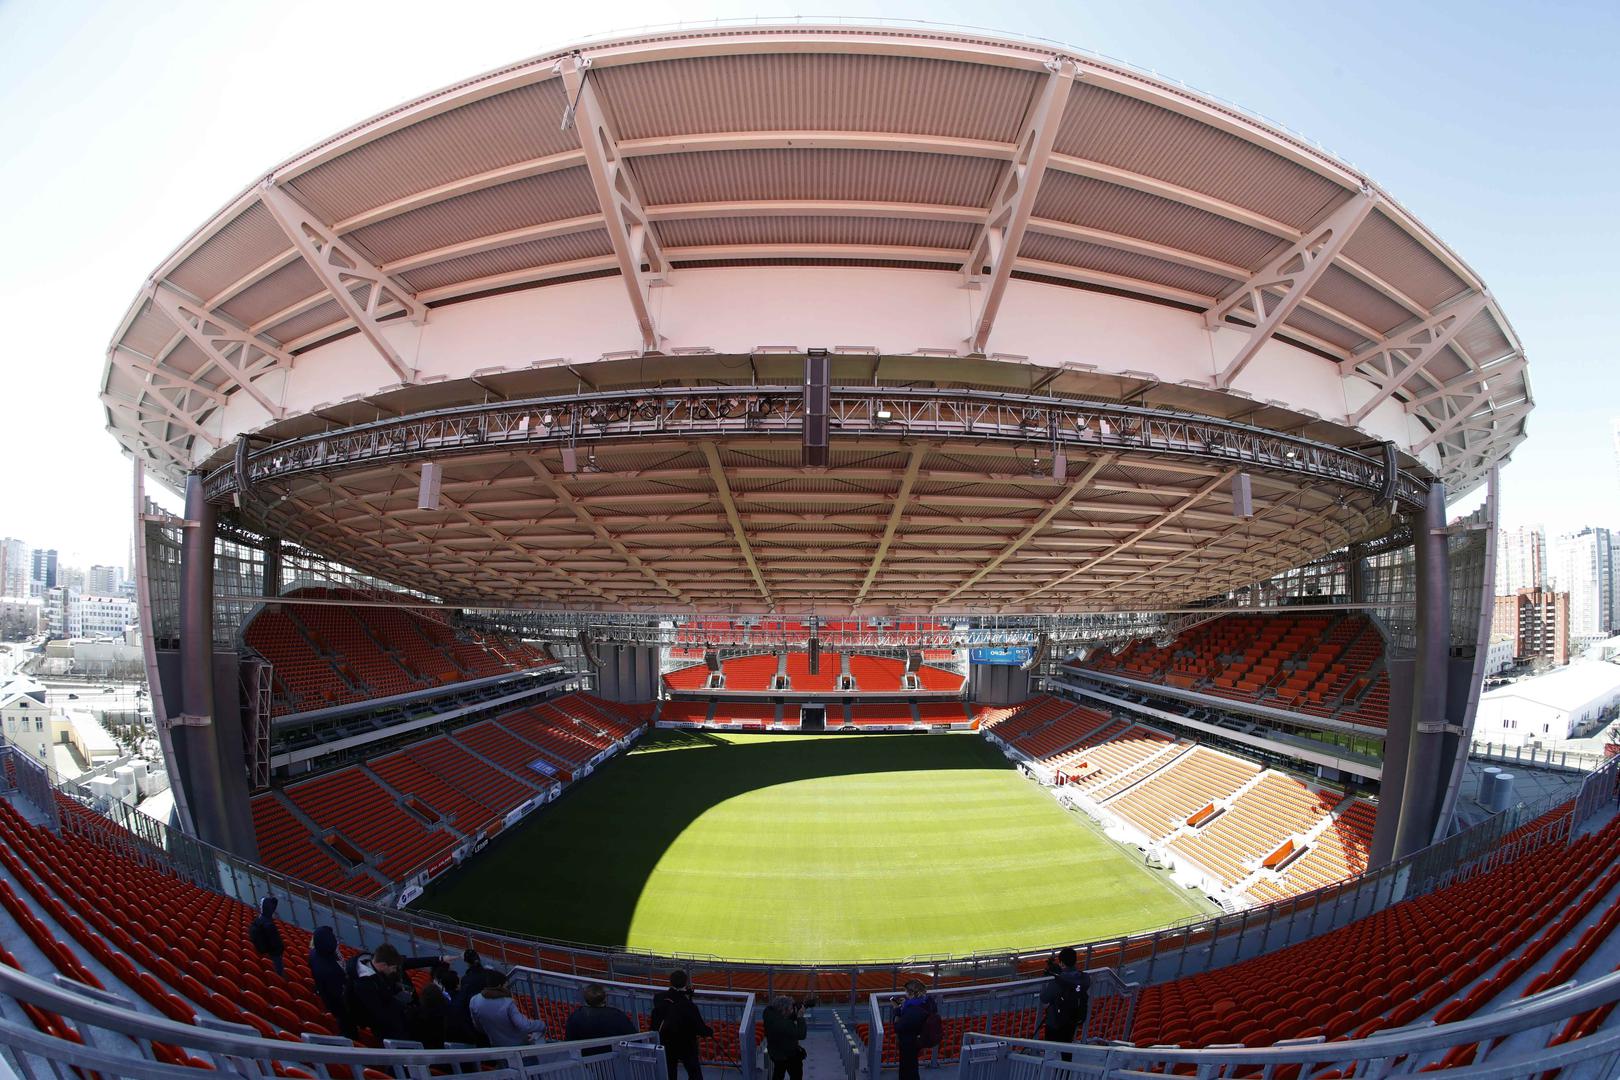 Arena je primala 23.000 gledatelja, ali po Fifi stadioni za SP moraju imati najmanje 35.000 mjesta